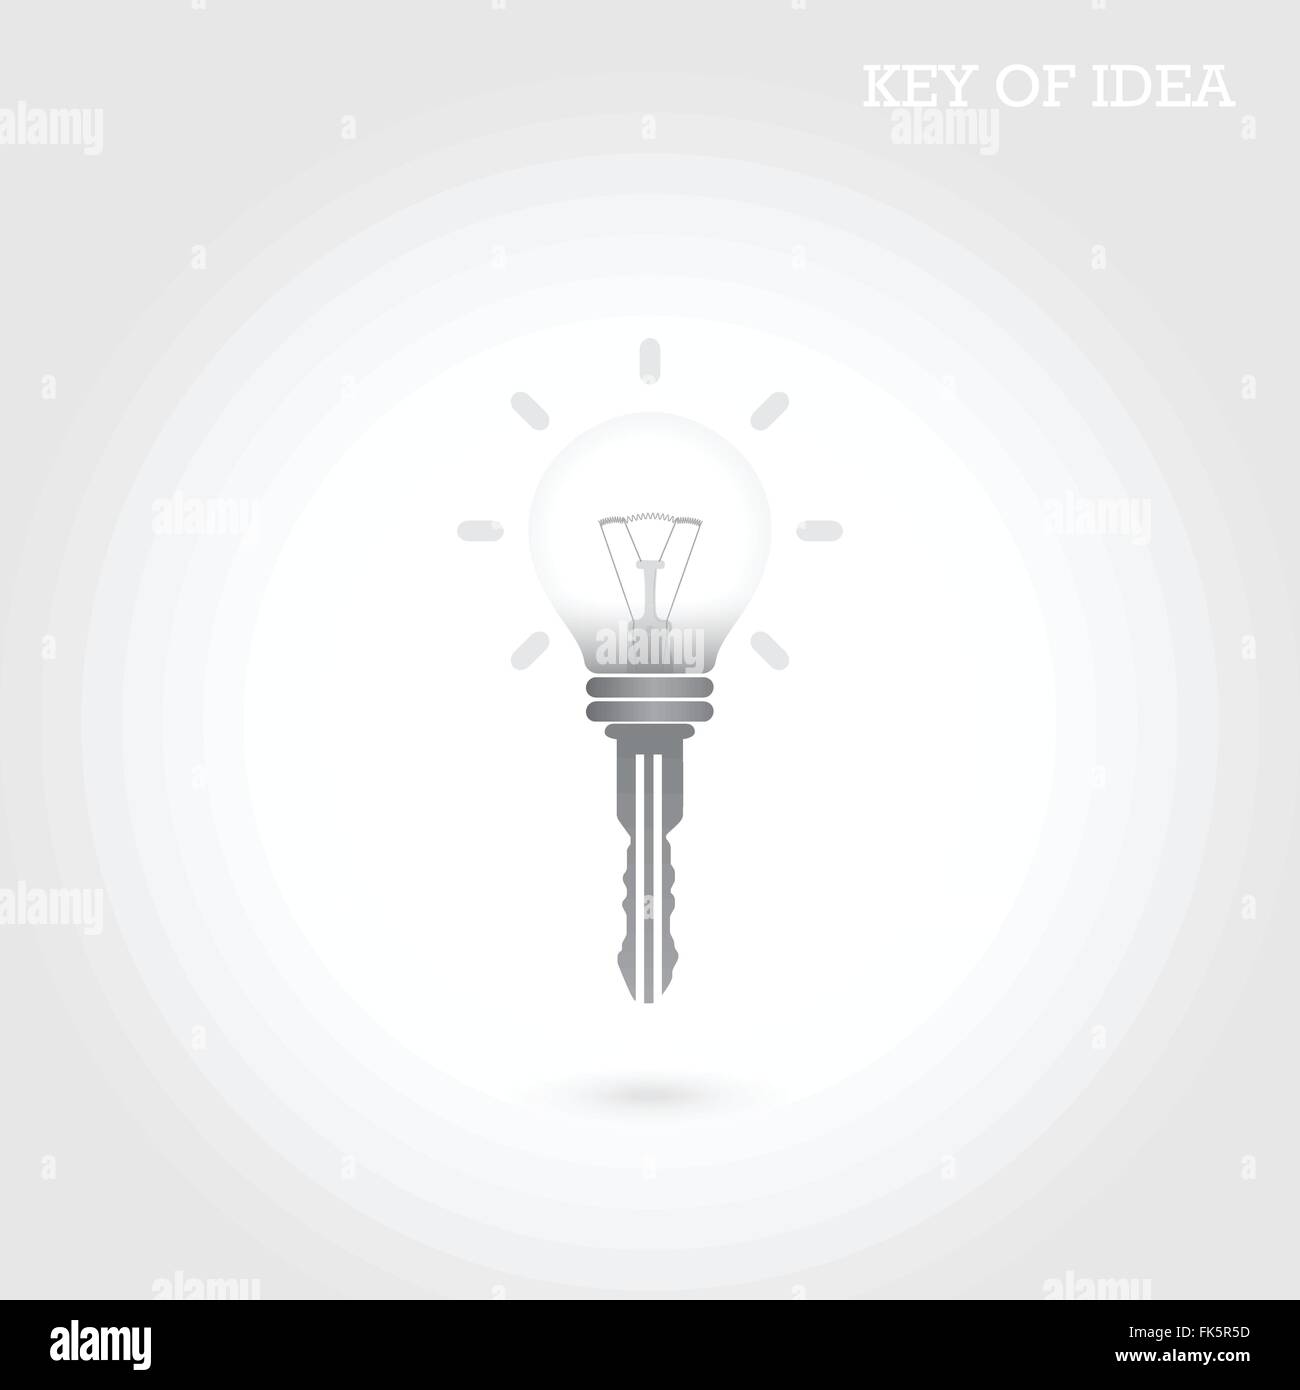 Kreative Glühbirne Idee Konzept mit Vorhängeschloss. Schlüssel der Idee. Business-Ideen. Vektor-Illustration. Stock Vektor